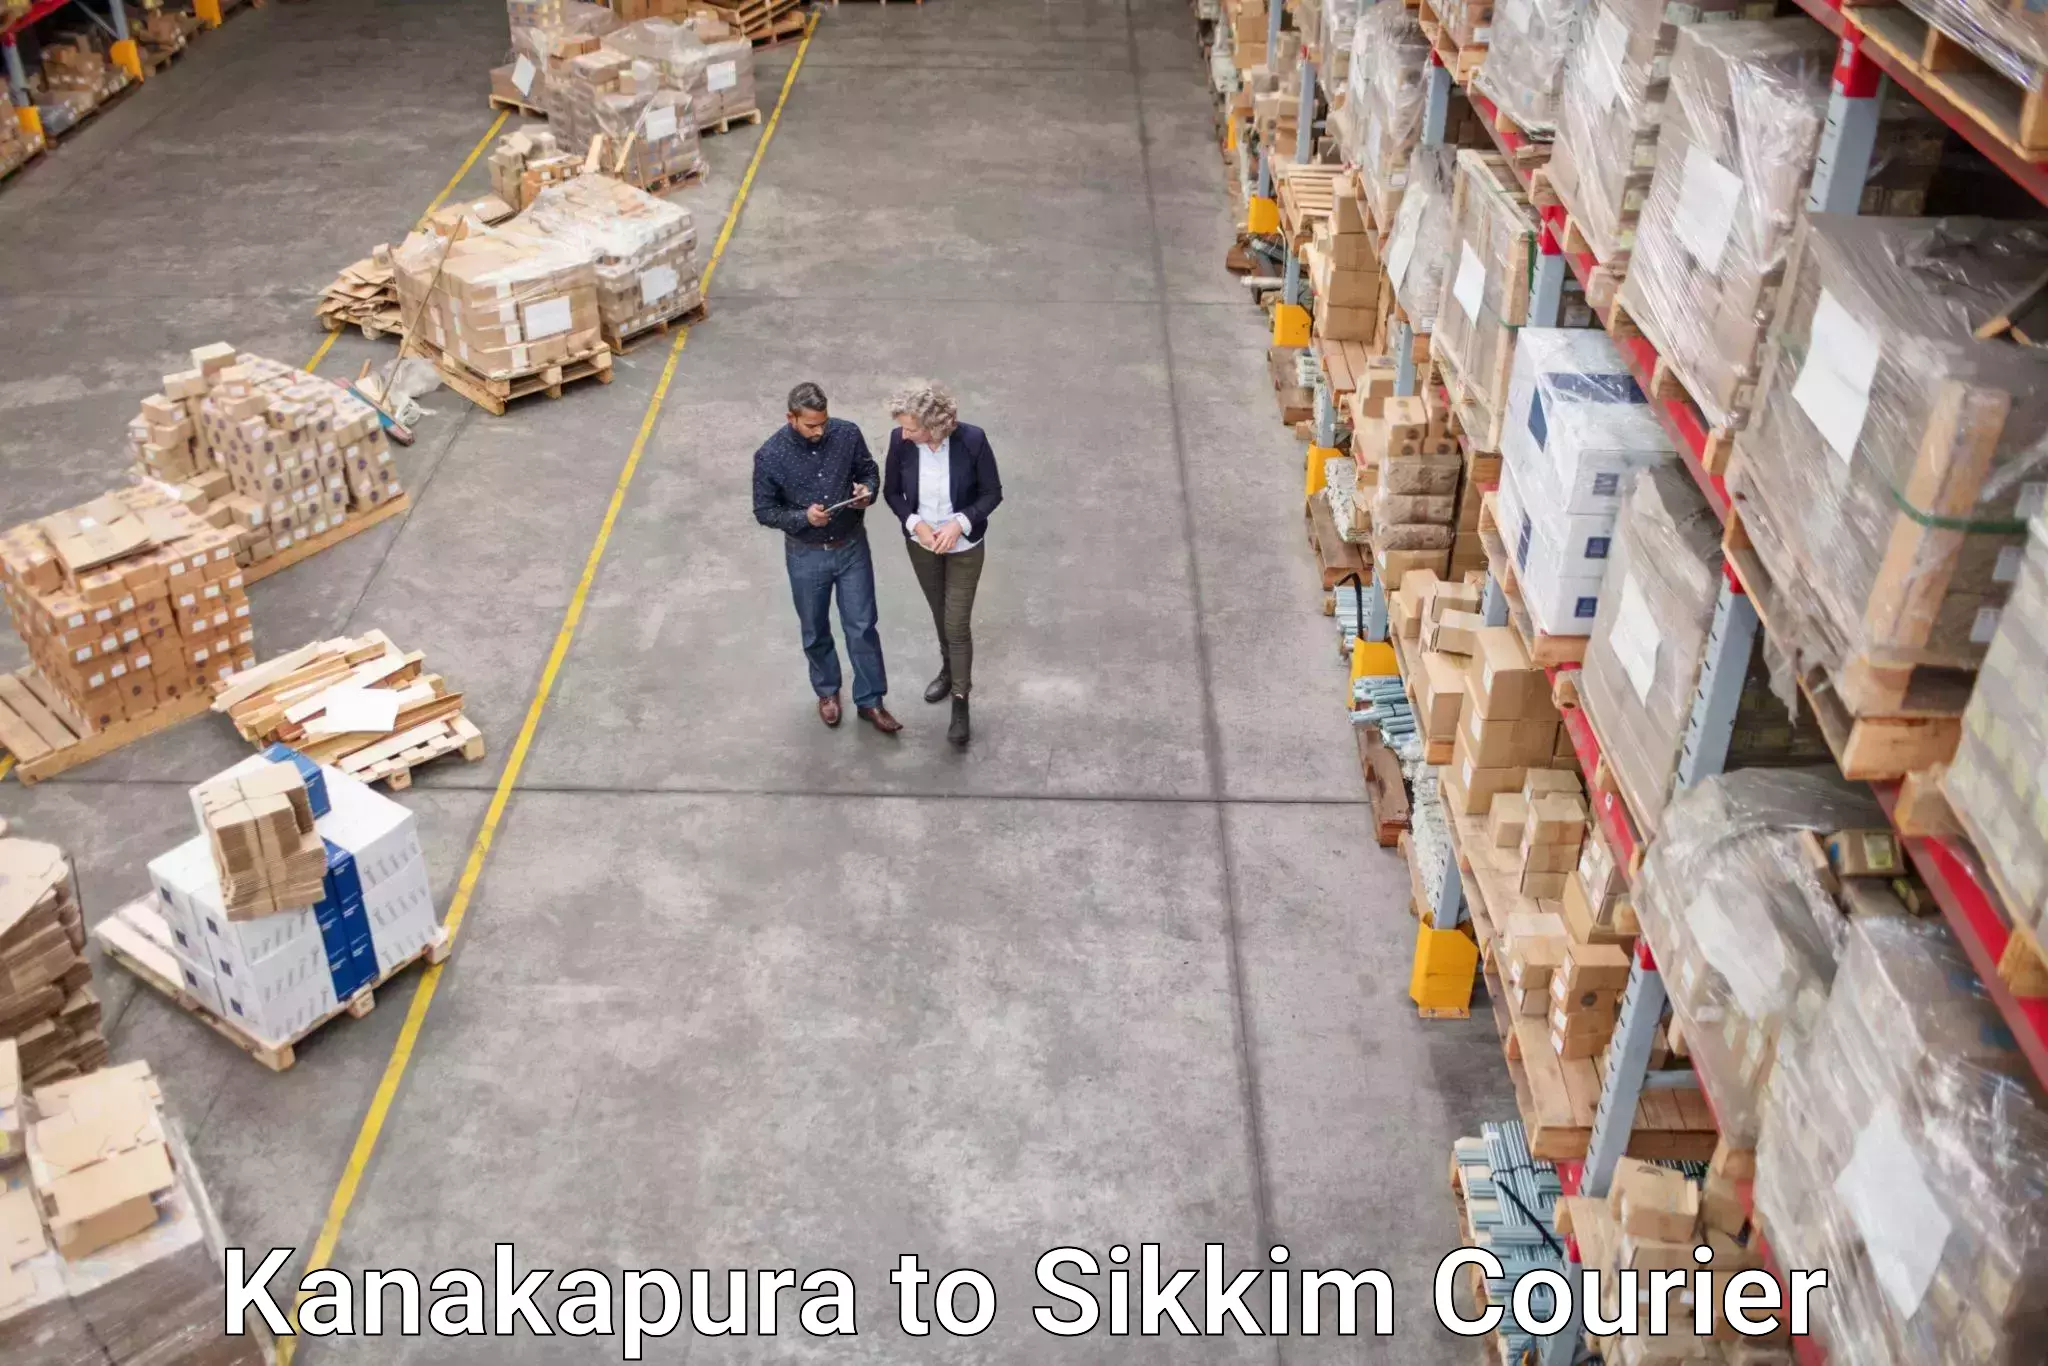 Premium courier solutions Kanakapura to Geyzing